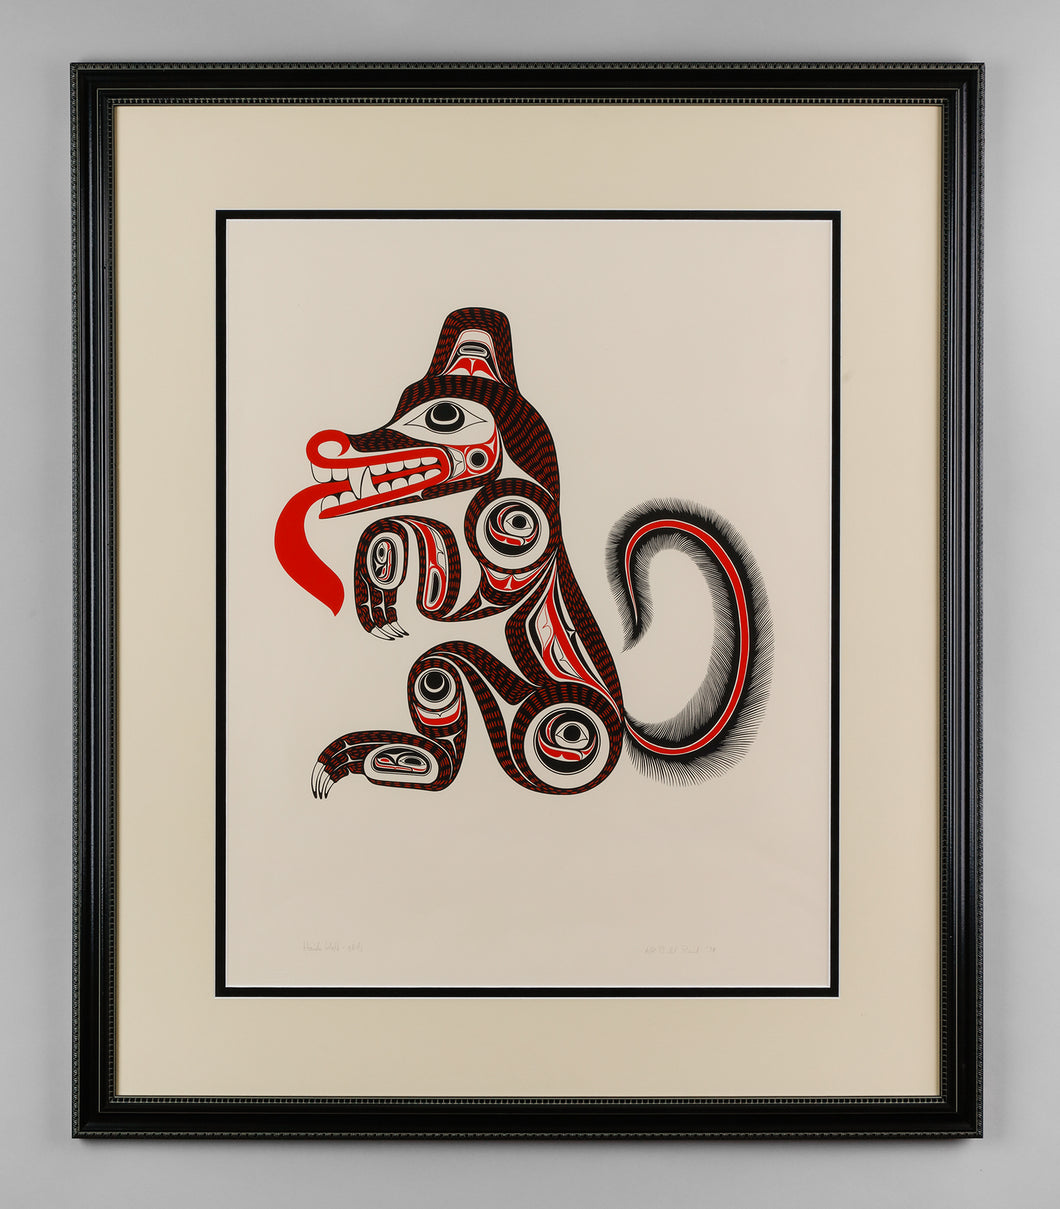 Haida Wolf by Bill Reid (1920-1998), Haida